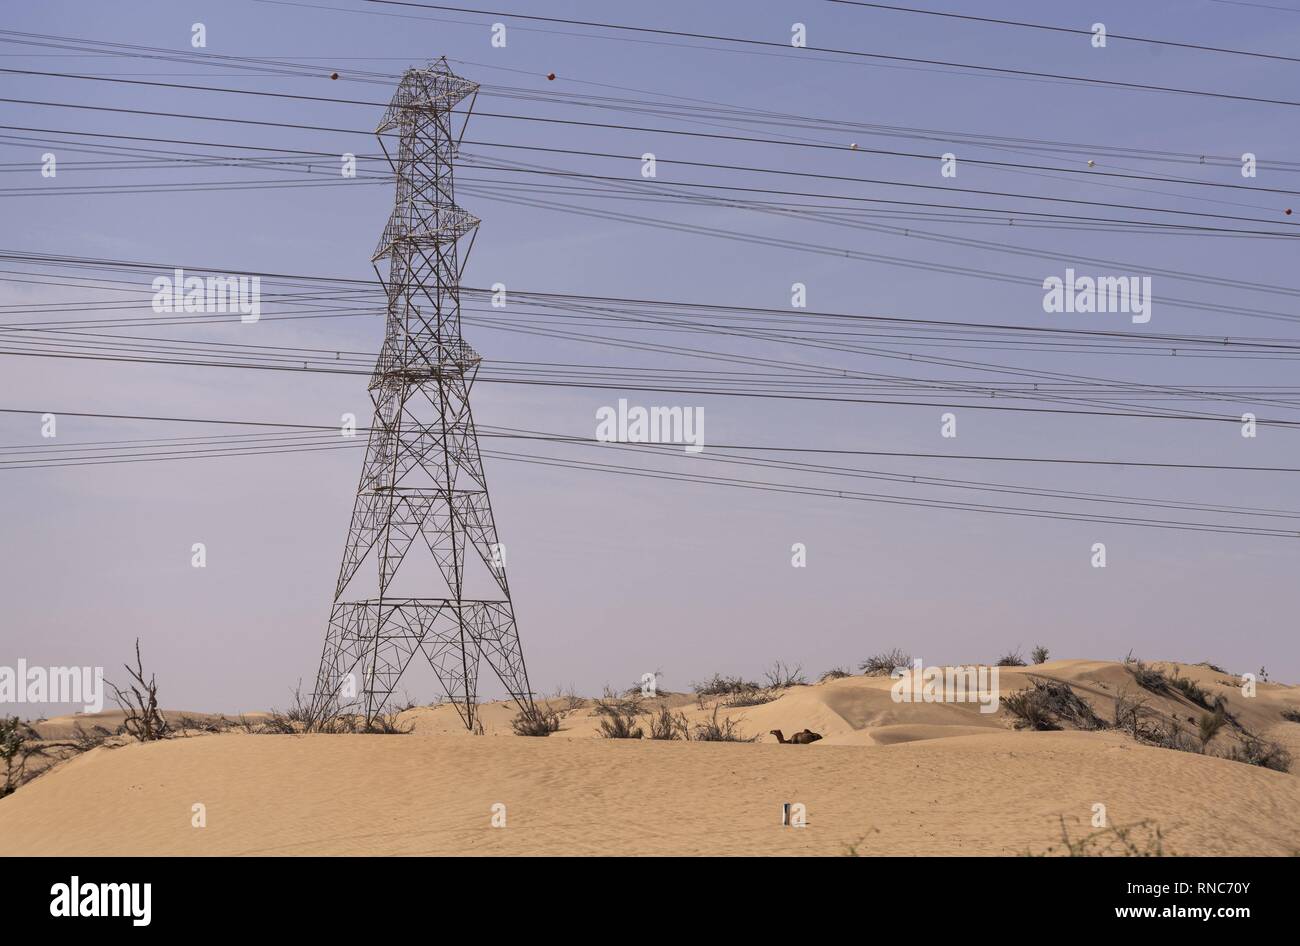 Les grandes lignes de transport de l'électricité de la Fondation Mohammed bin Rashid Al Maktoum parc solaire dans l'émirat. L'énorme installation solaire est situé à environ 50 km au sud de la ville de Dubaï au milieu du désert. (12 janvier 2019) | dans le monde entier Banque D'Images